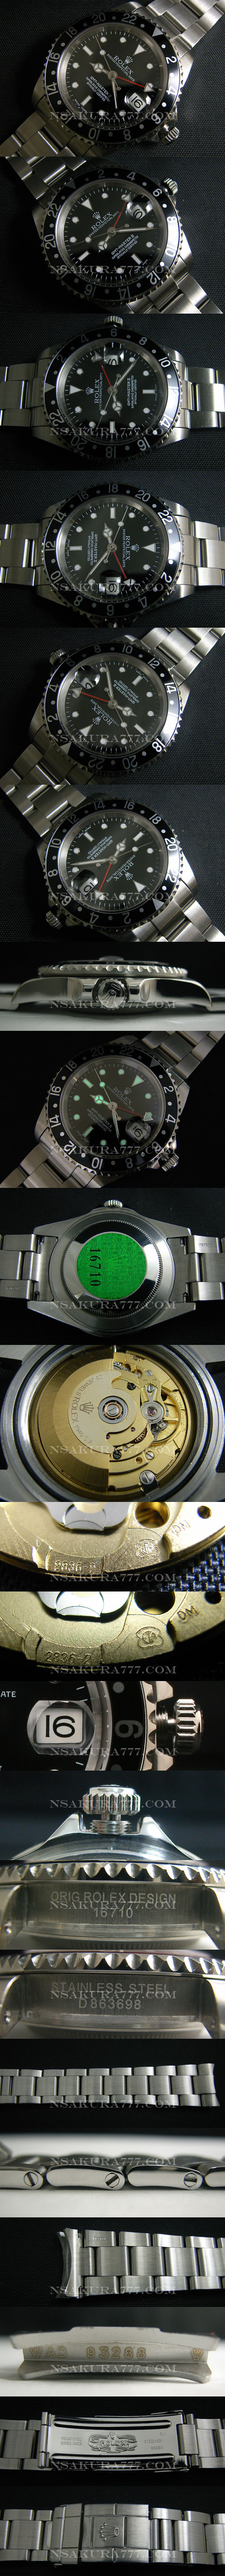 レプリカ時計ロレックス GMT マスター2836搭載 ,赤針単独作動 - ウインドウを閉じる